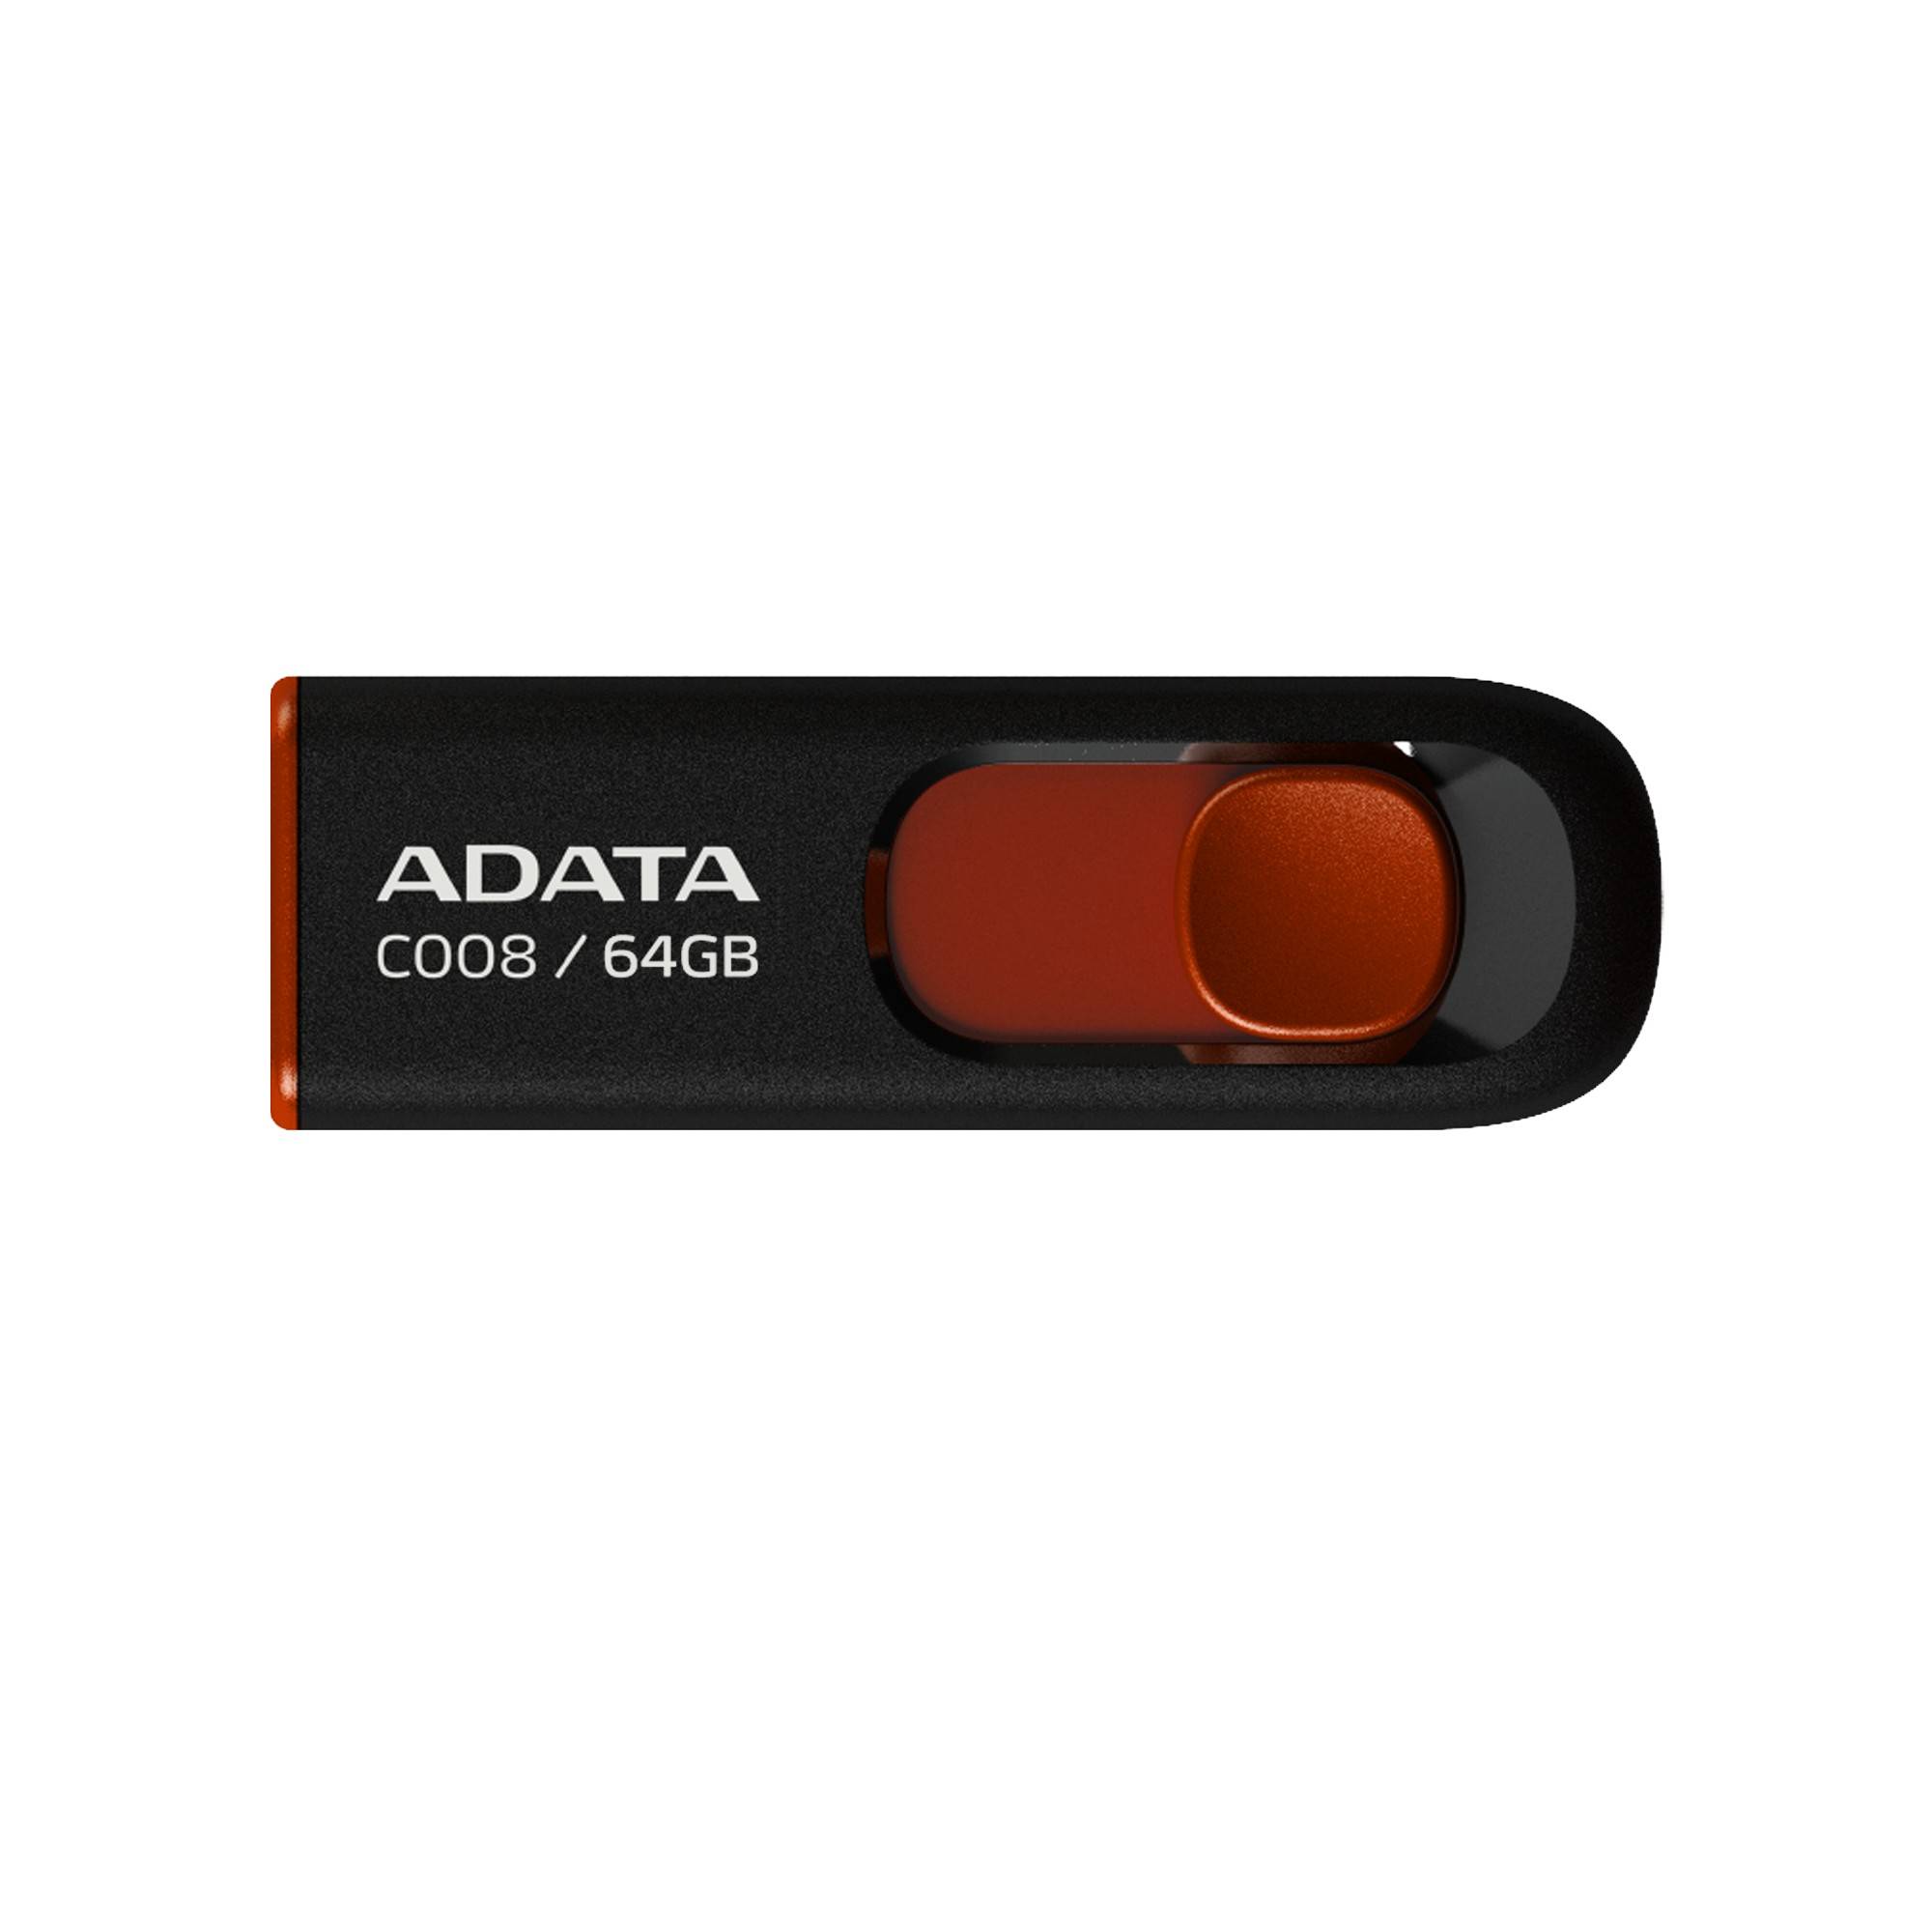 Memoria USB ADATA C008 - Negro